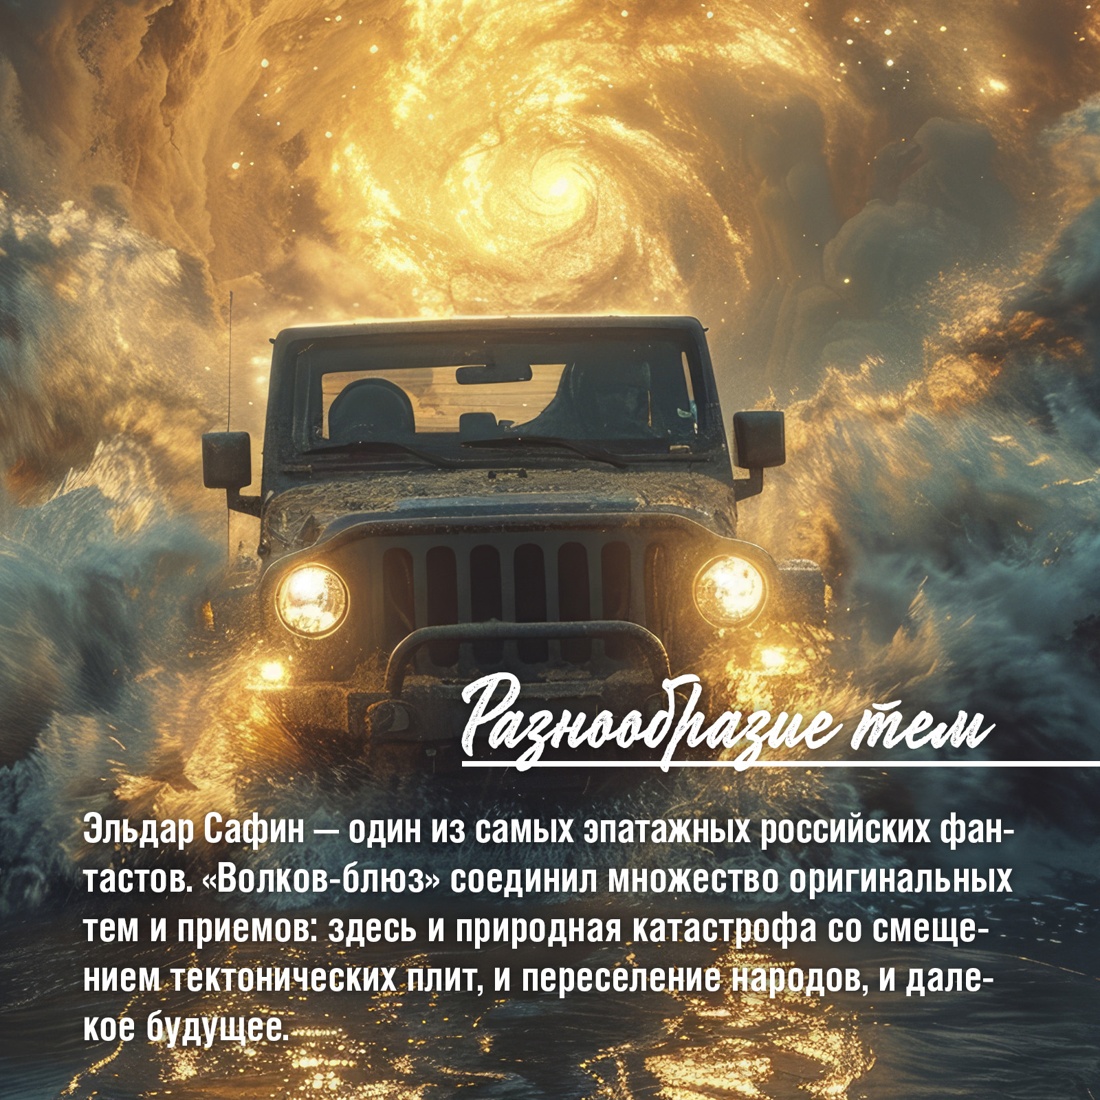 Промо материал к книге "Волков-блюз" №6